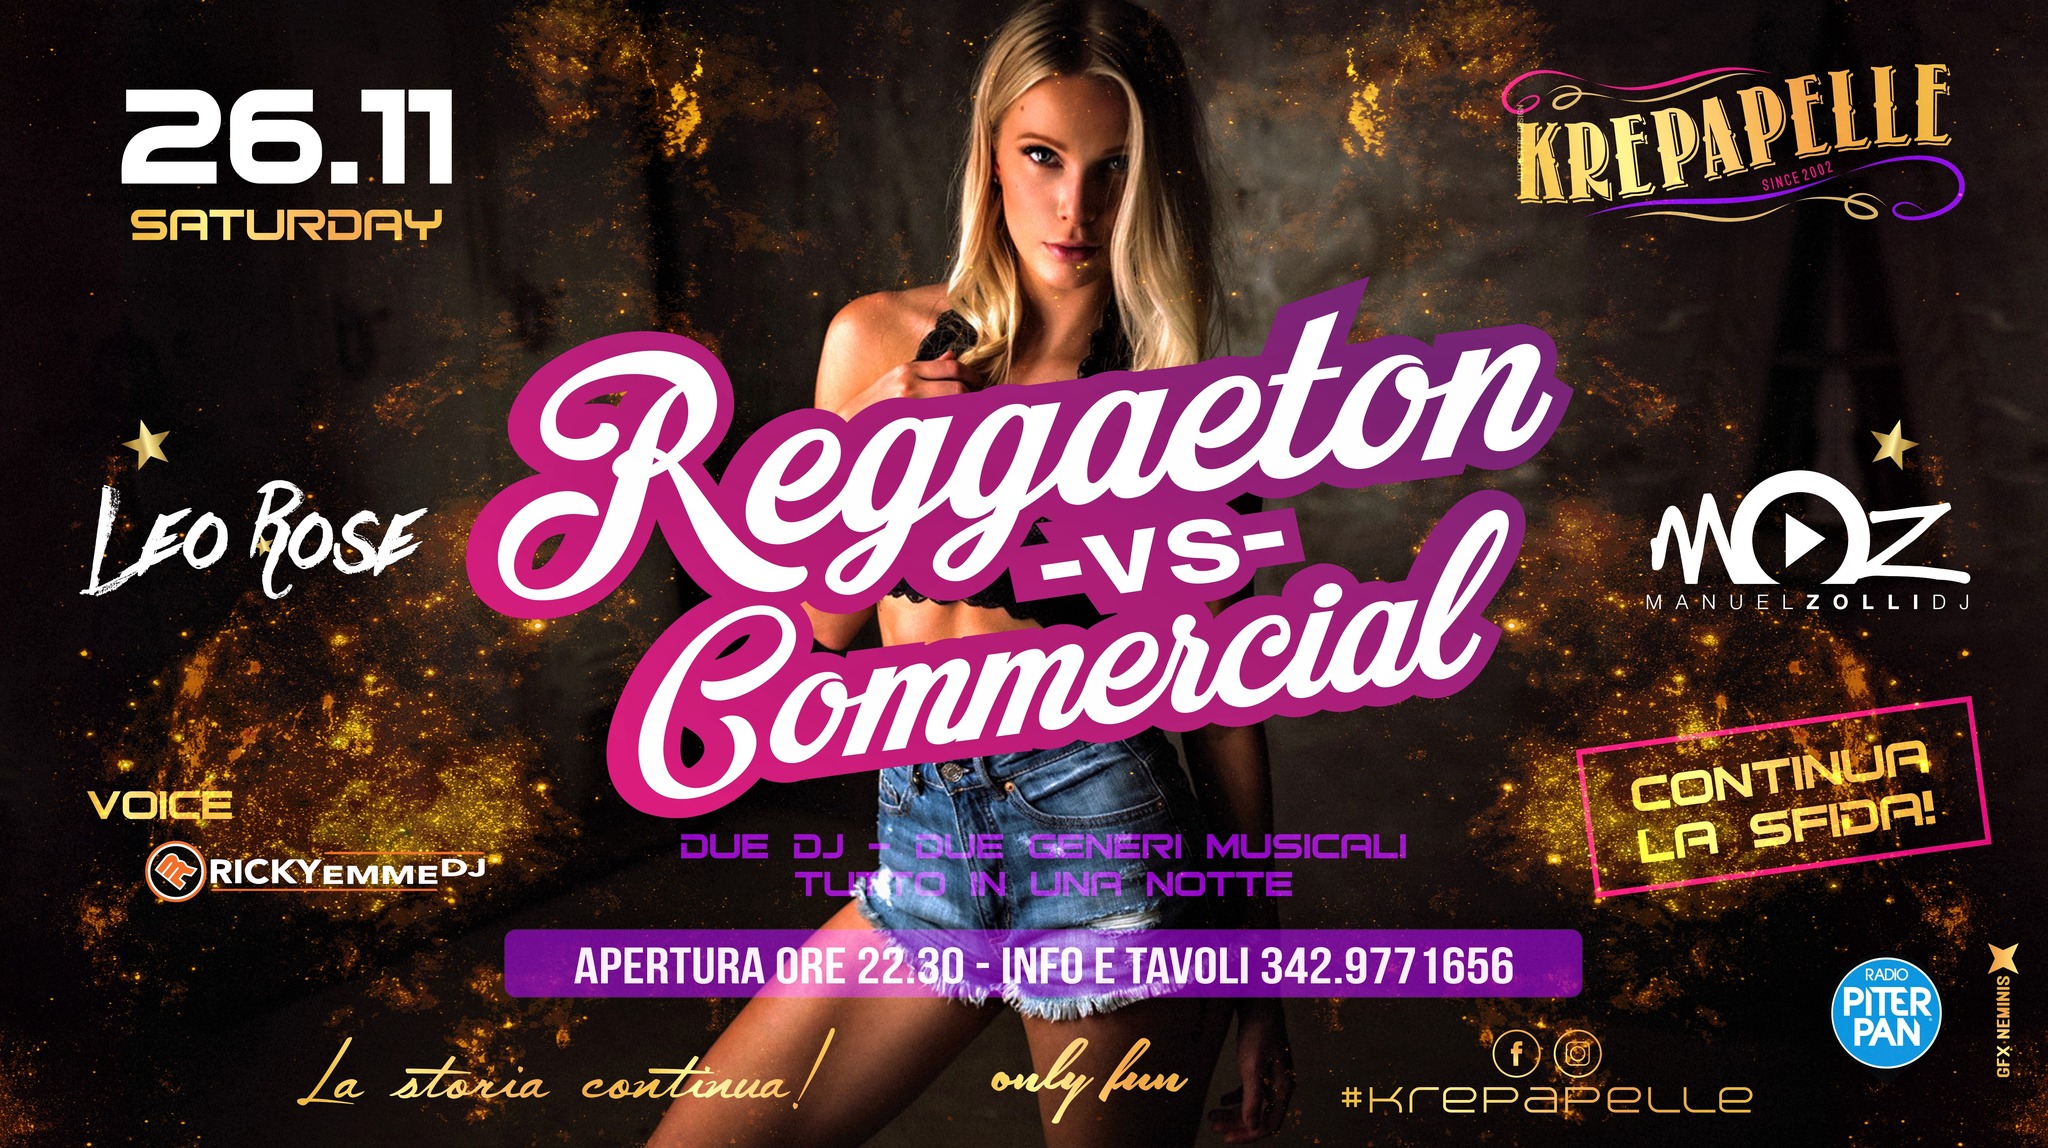 KREPAPELLE - Reggaeton vs Commercial